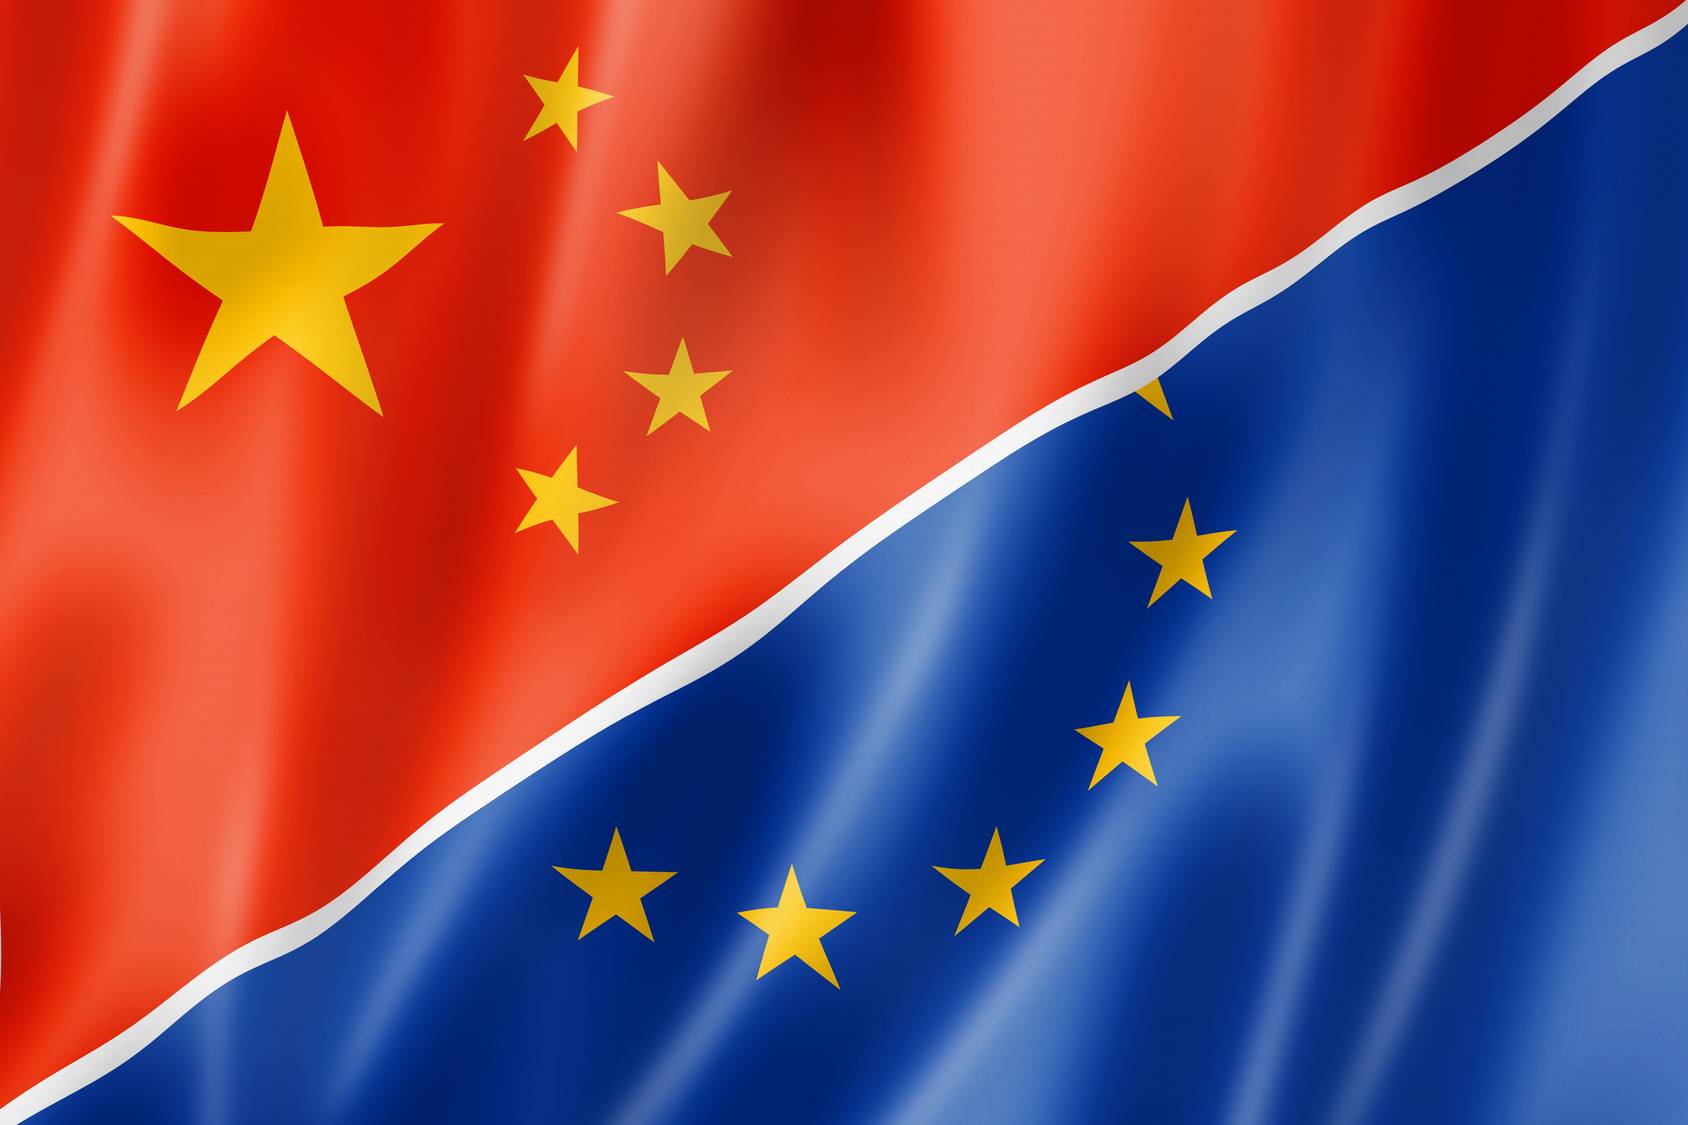 BE-ja publikon strategjitë me Kinën në 5 vitet e ardhshme